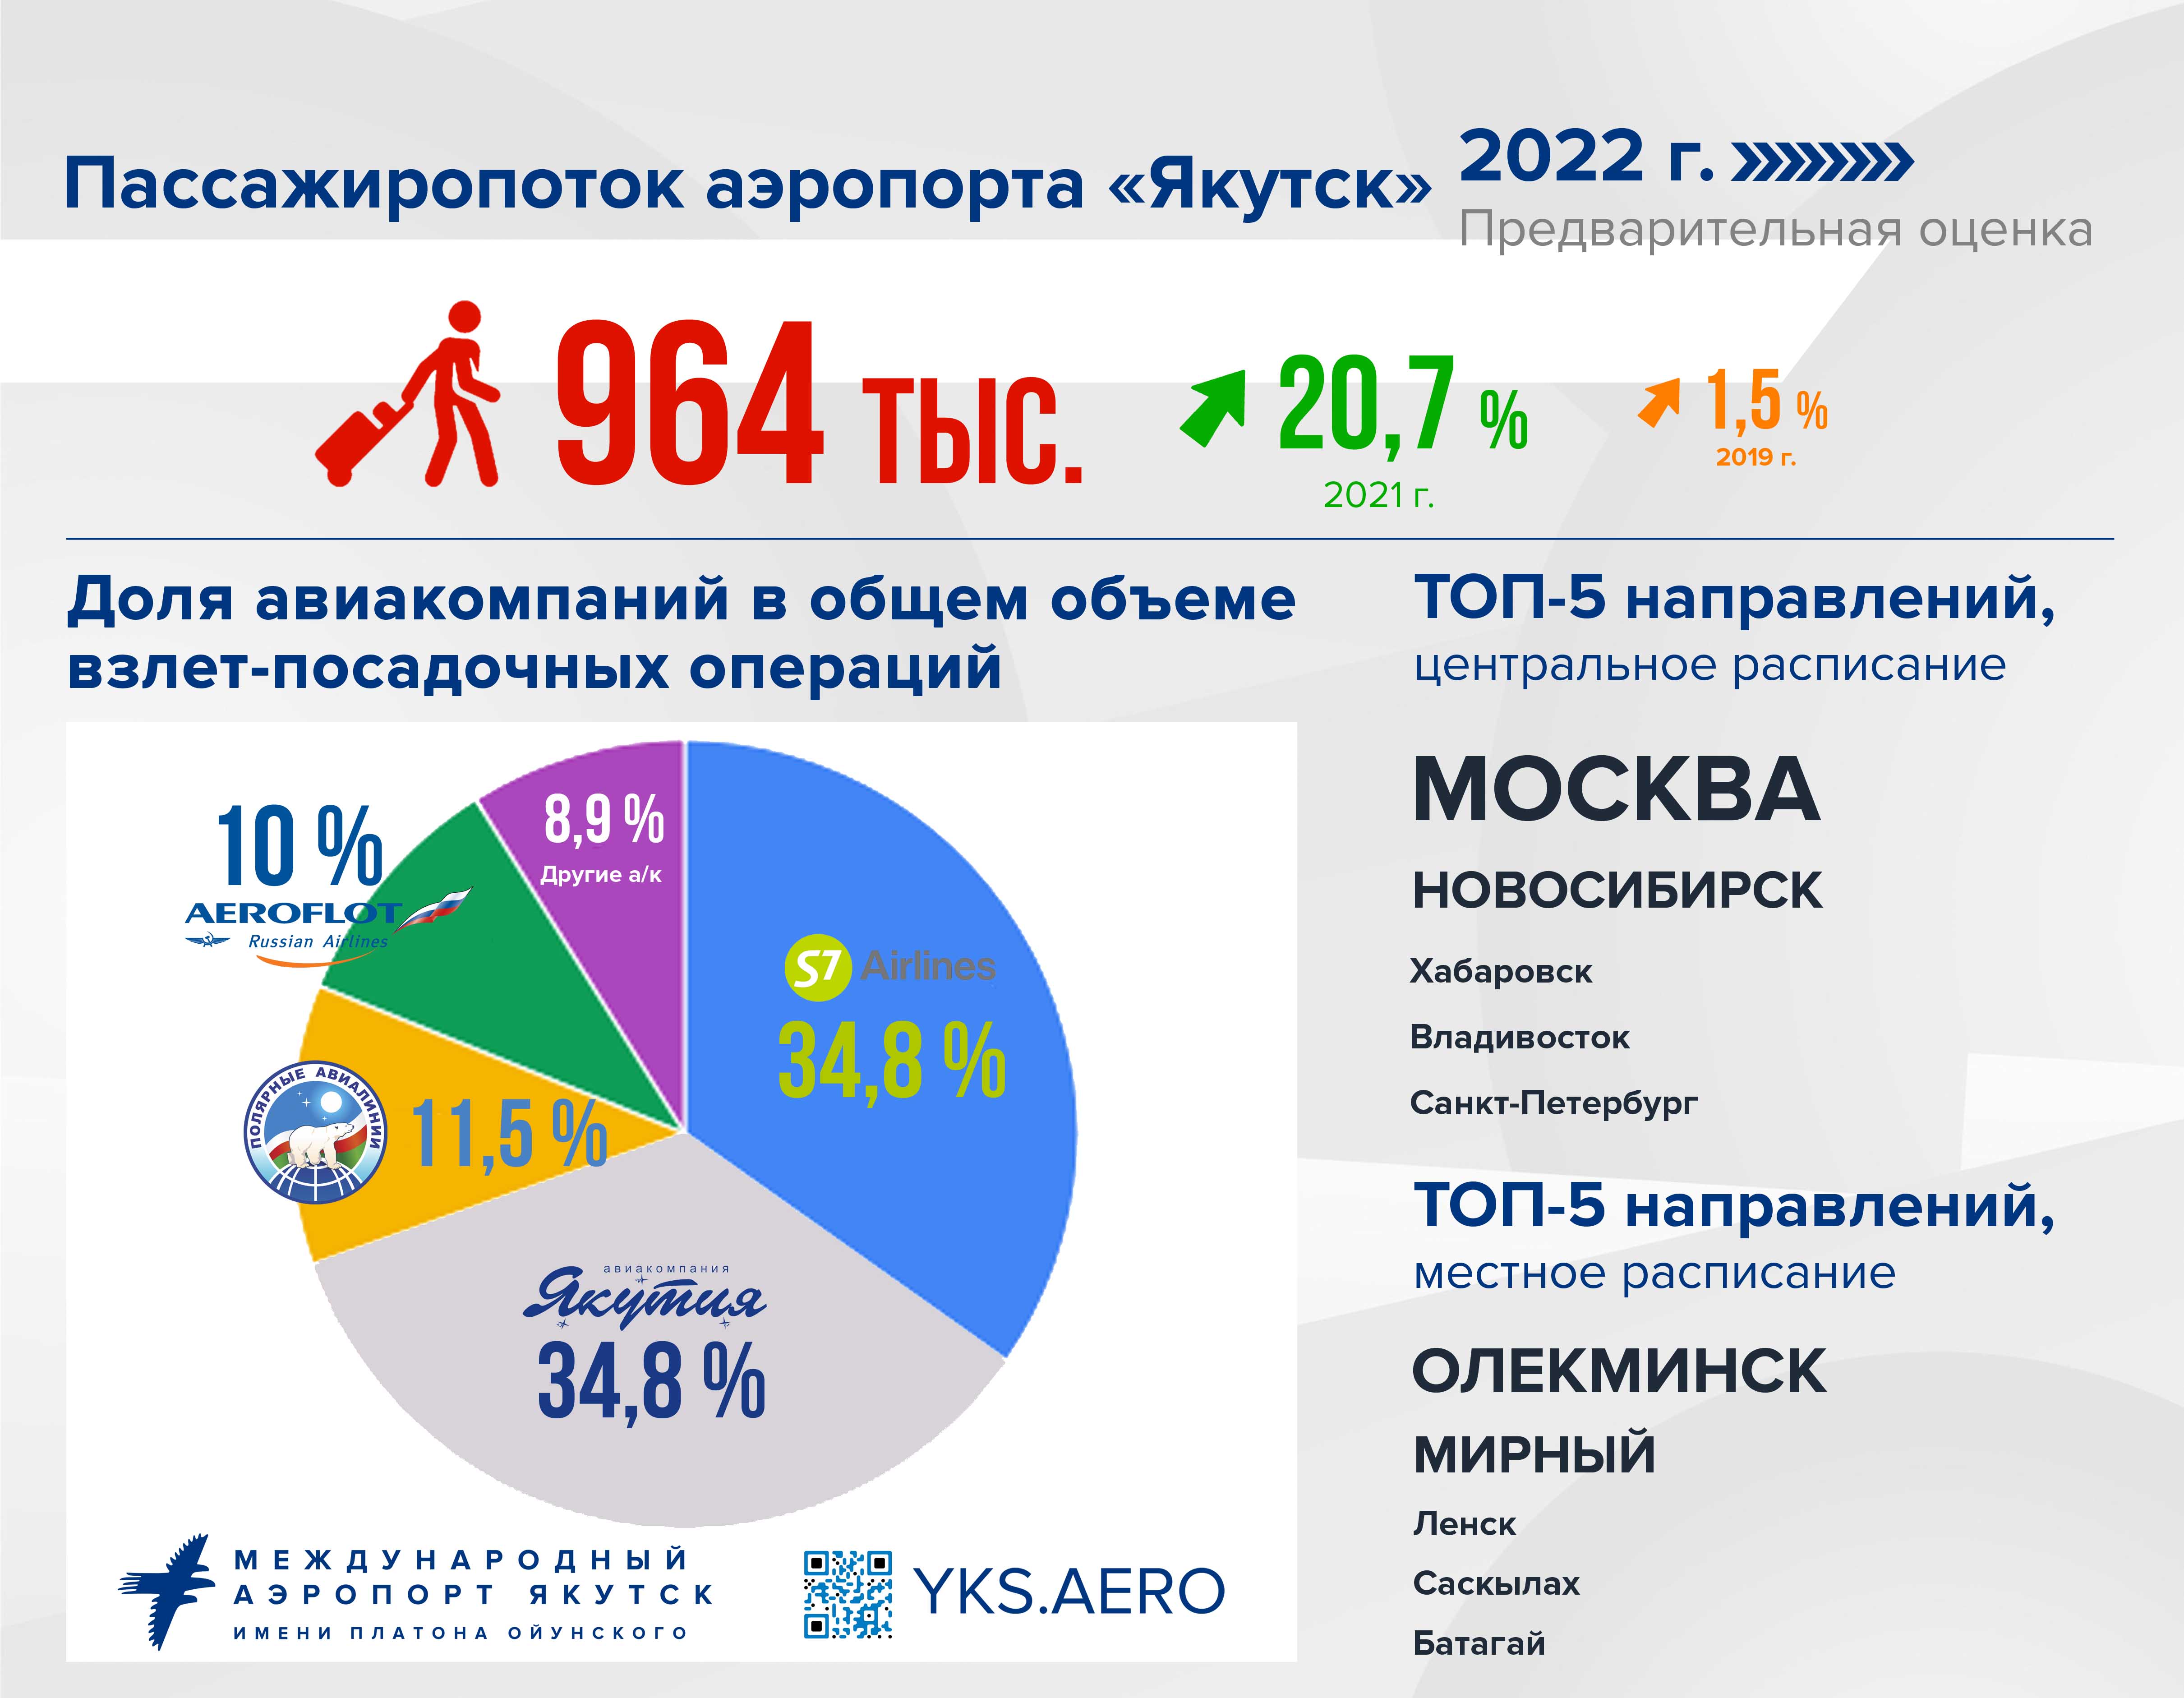 Сколько лет москве 2022. Сколько людей в России. Сколько людей в России 2022. Итоги года 2022. Экономика России 2022.